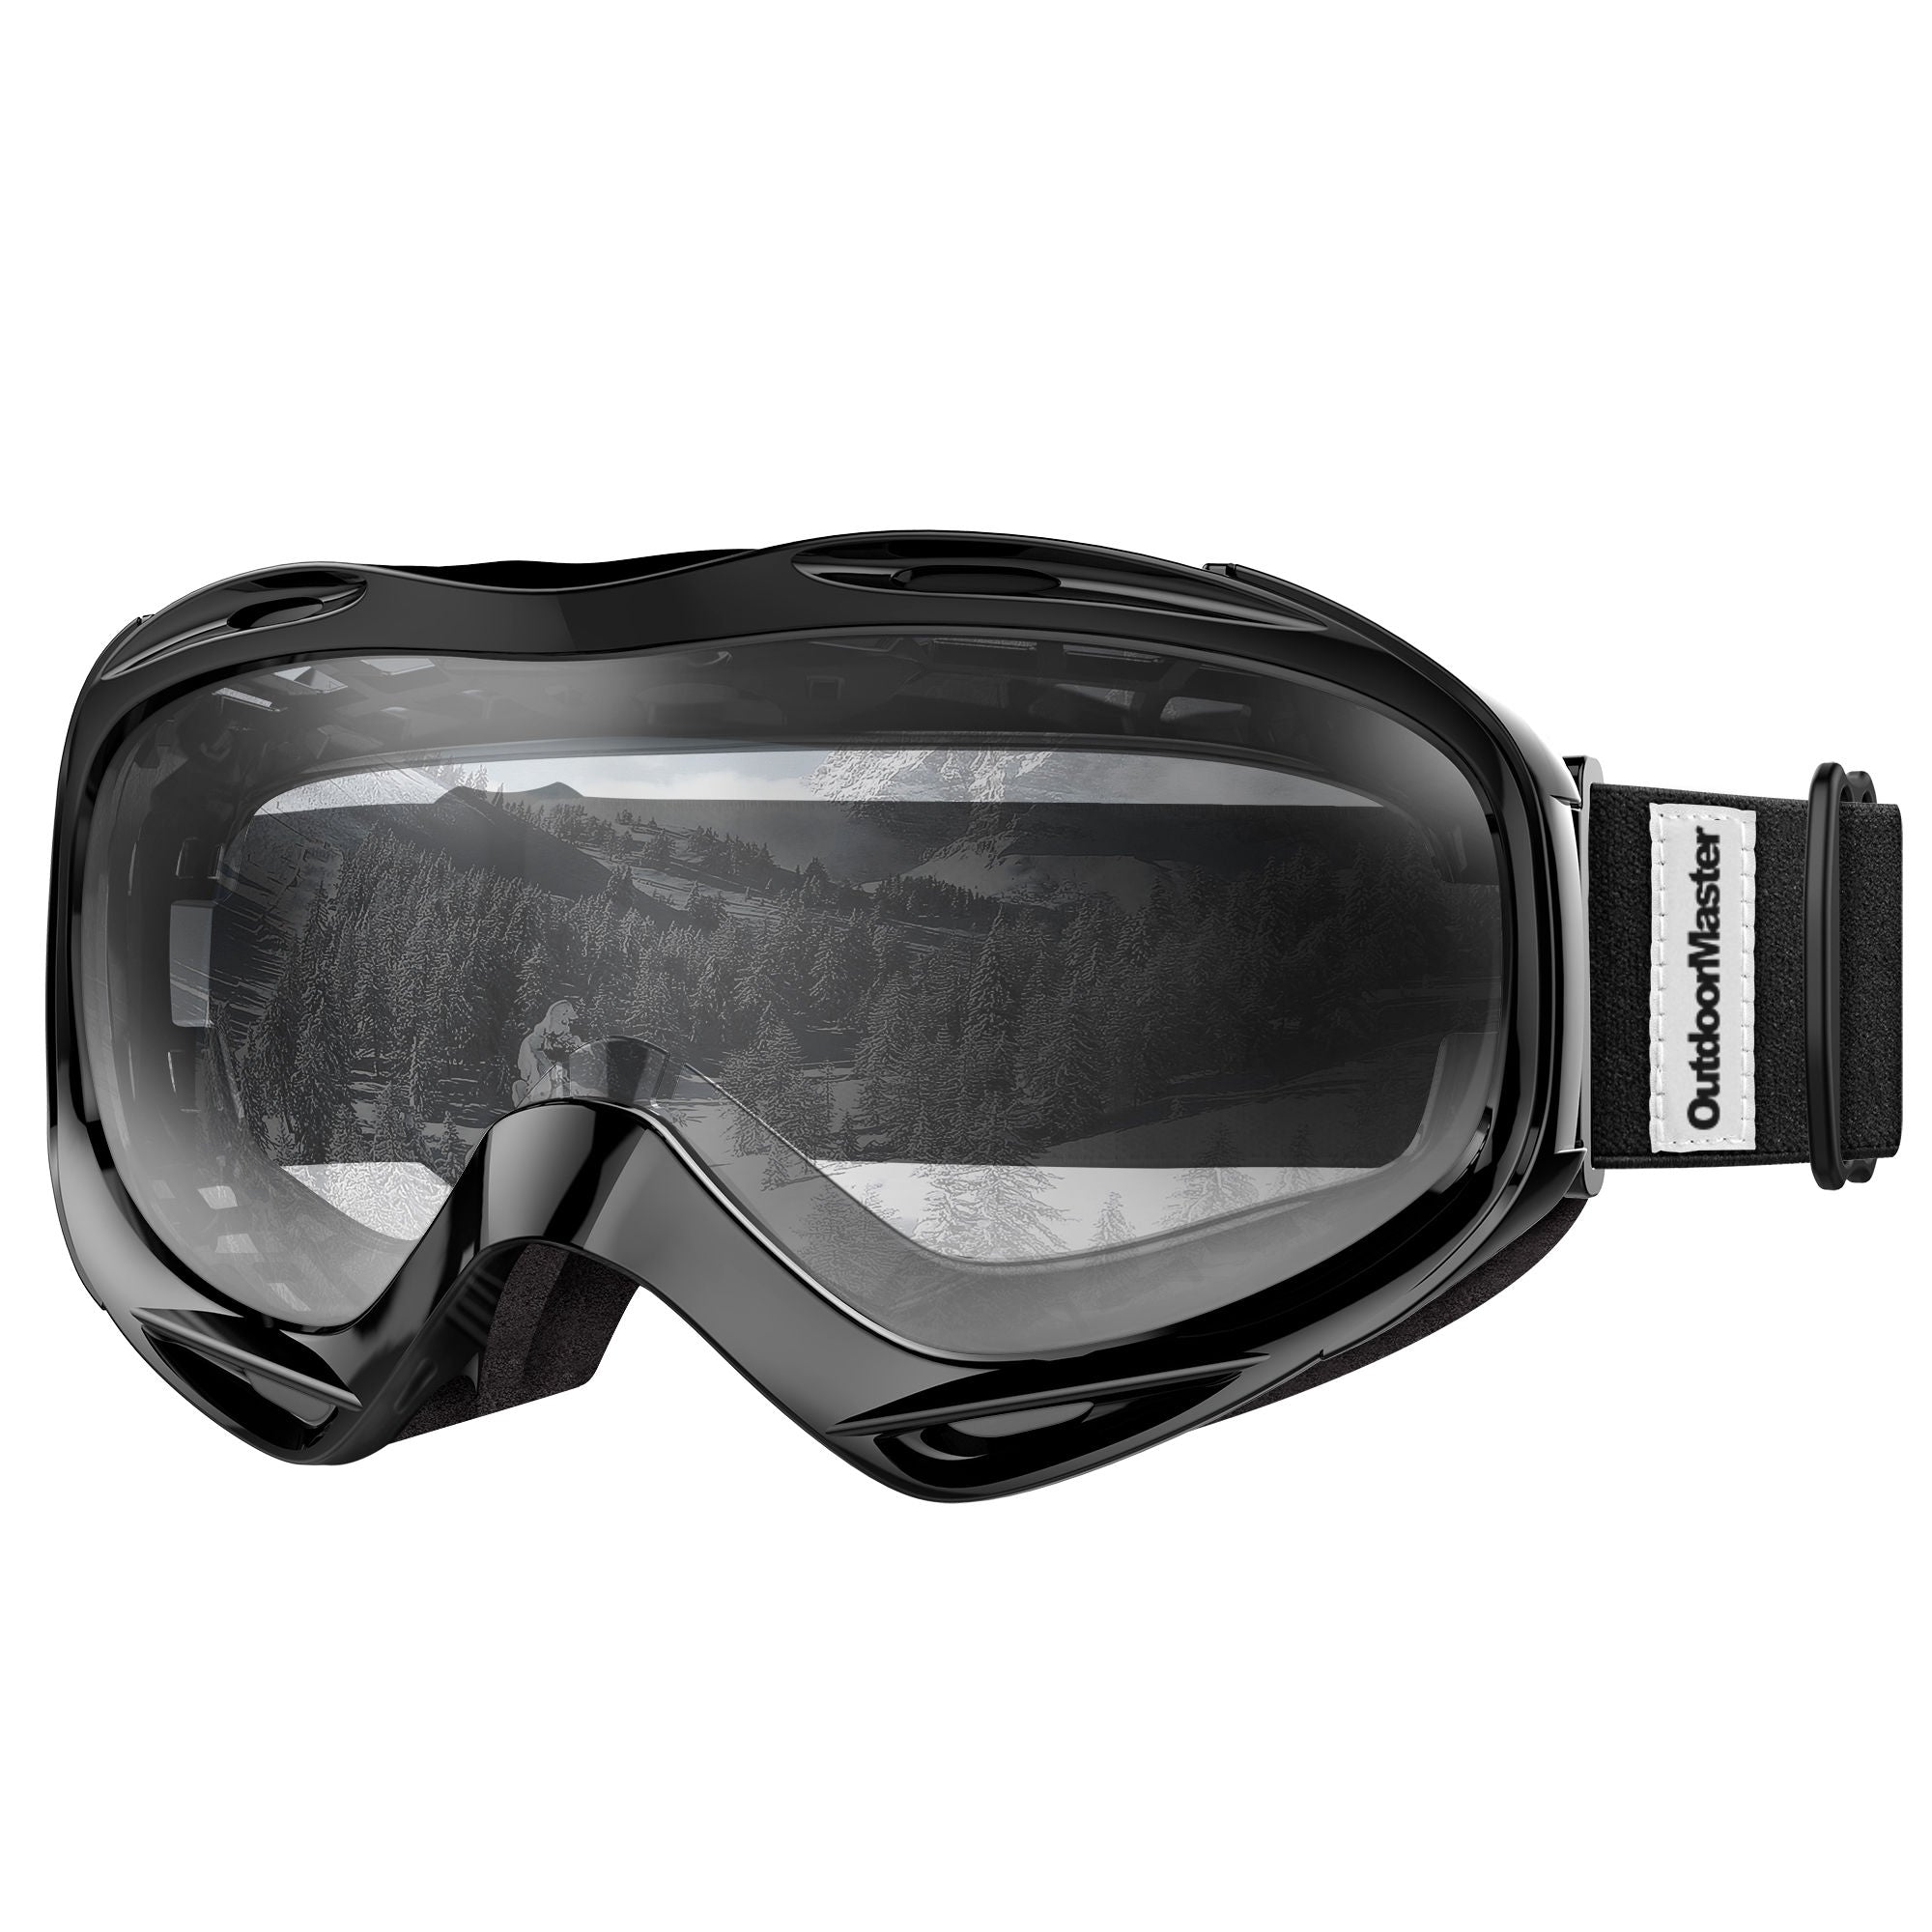 ski goggles for glasses